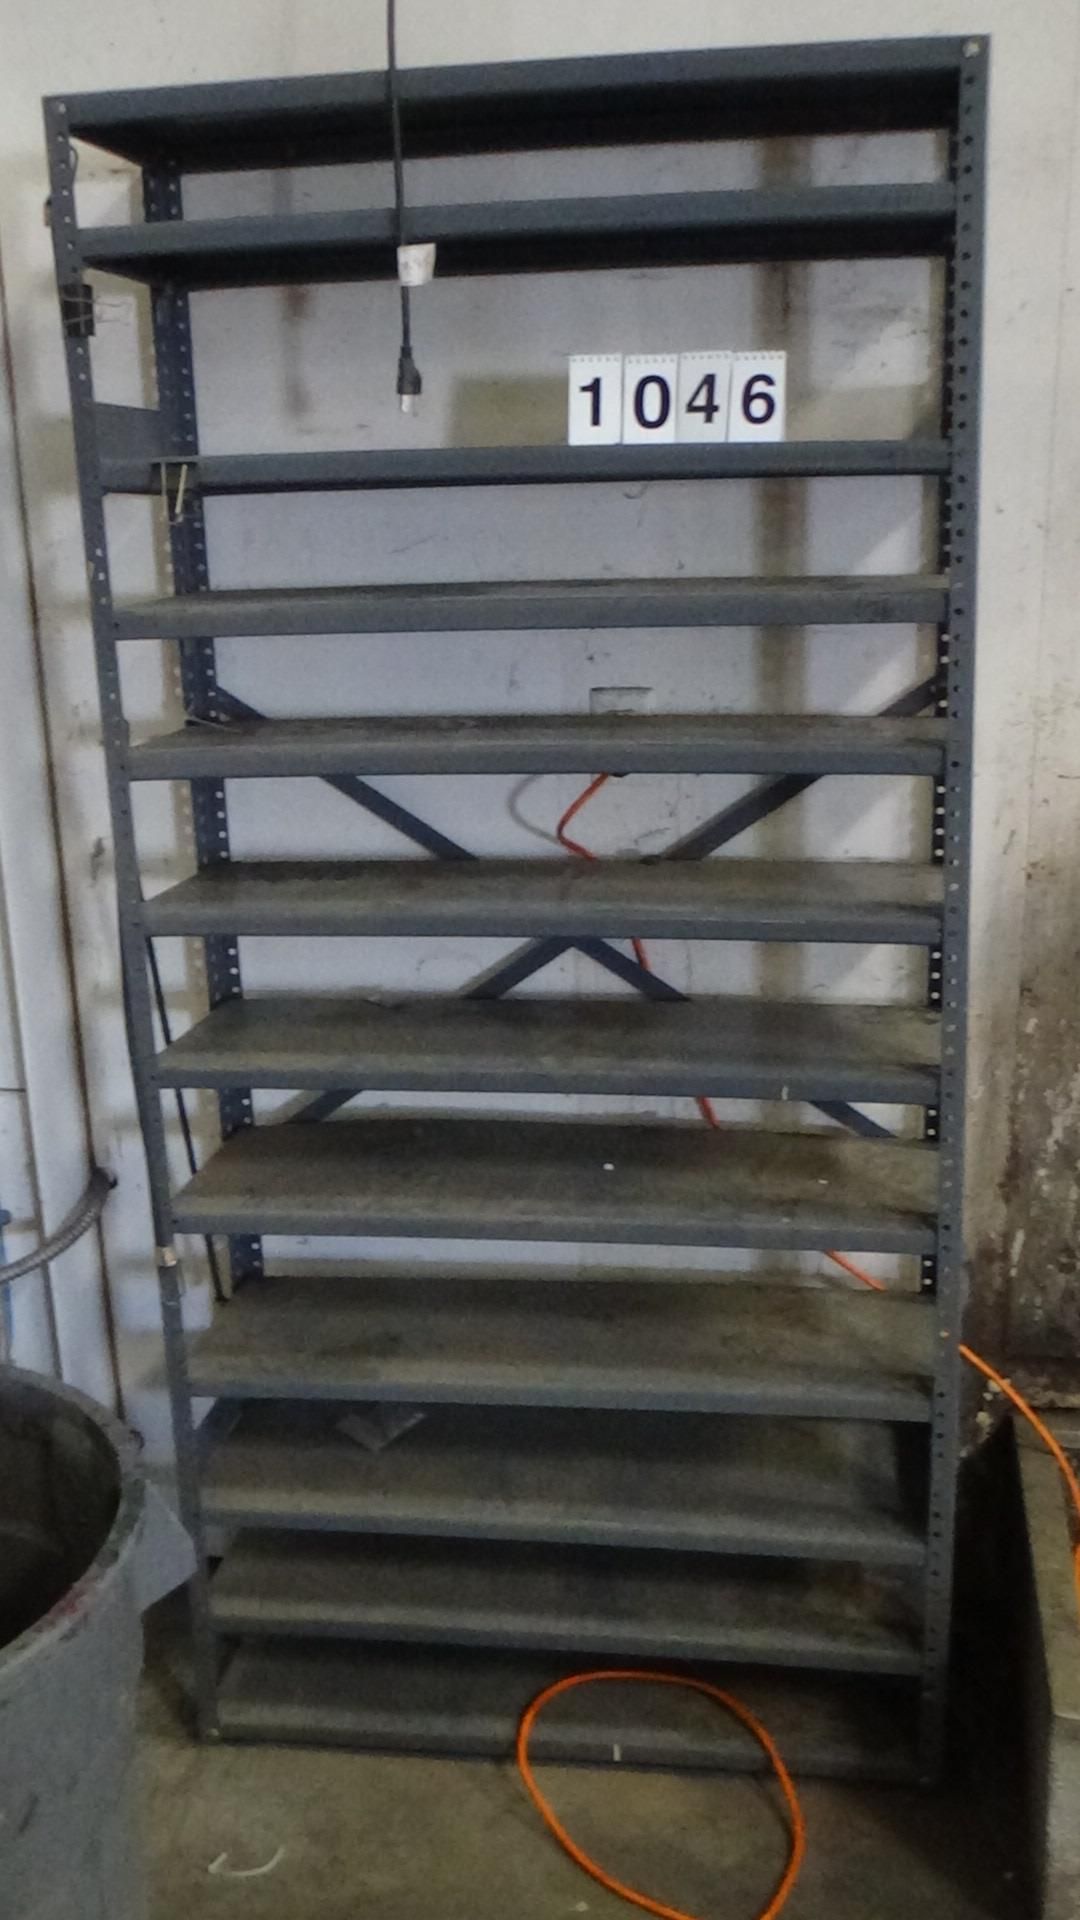 1046 11 shelf metal rack